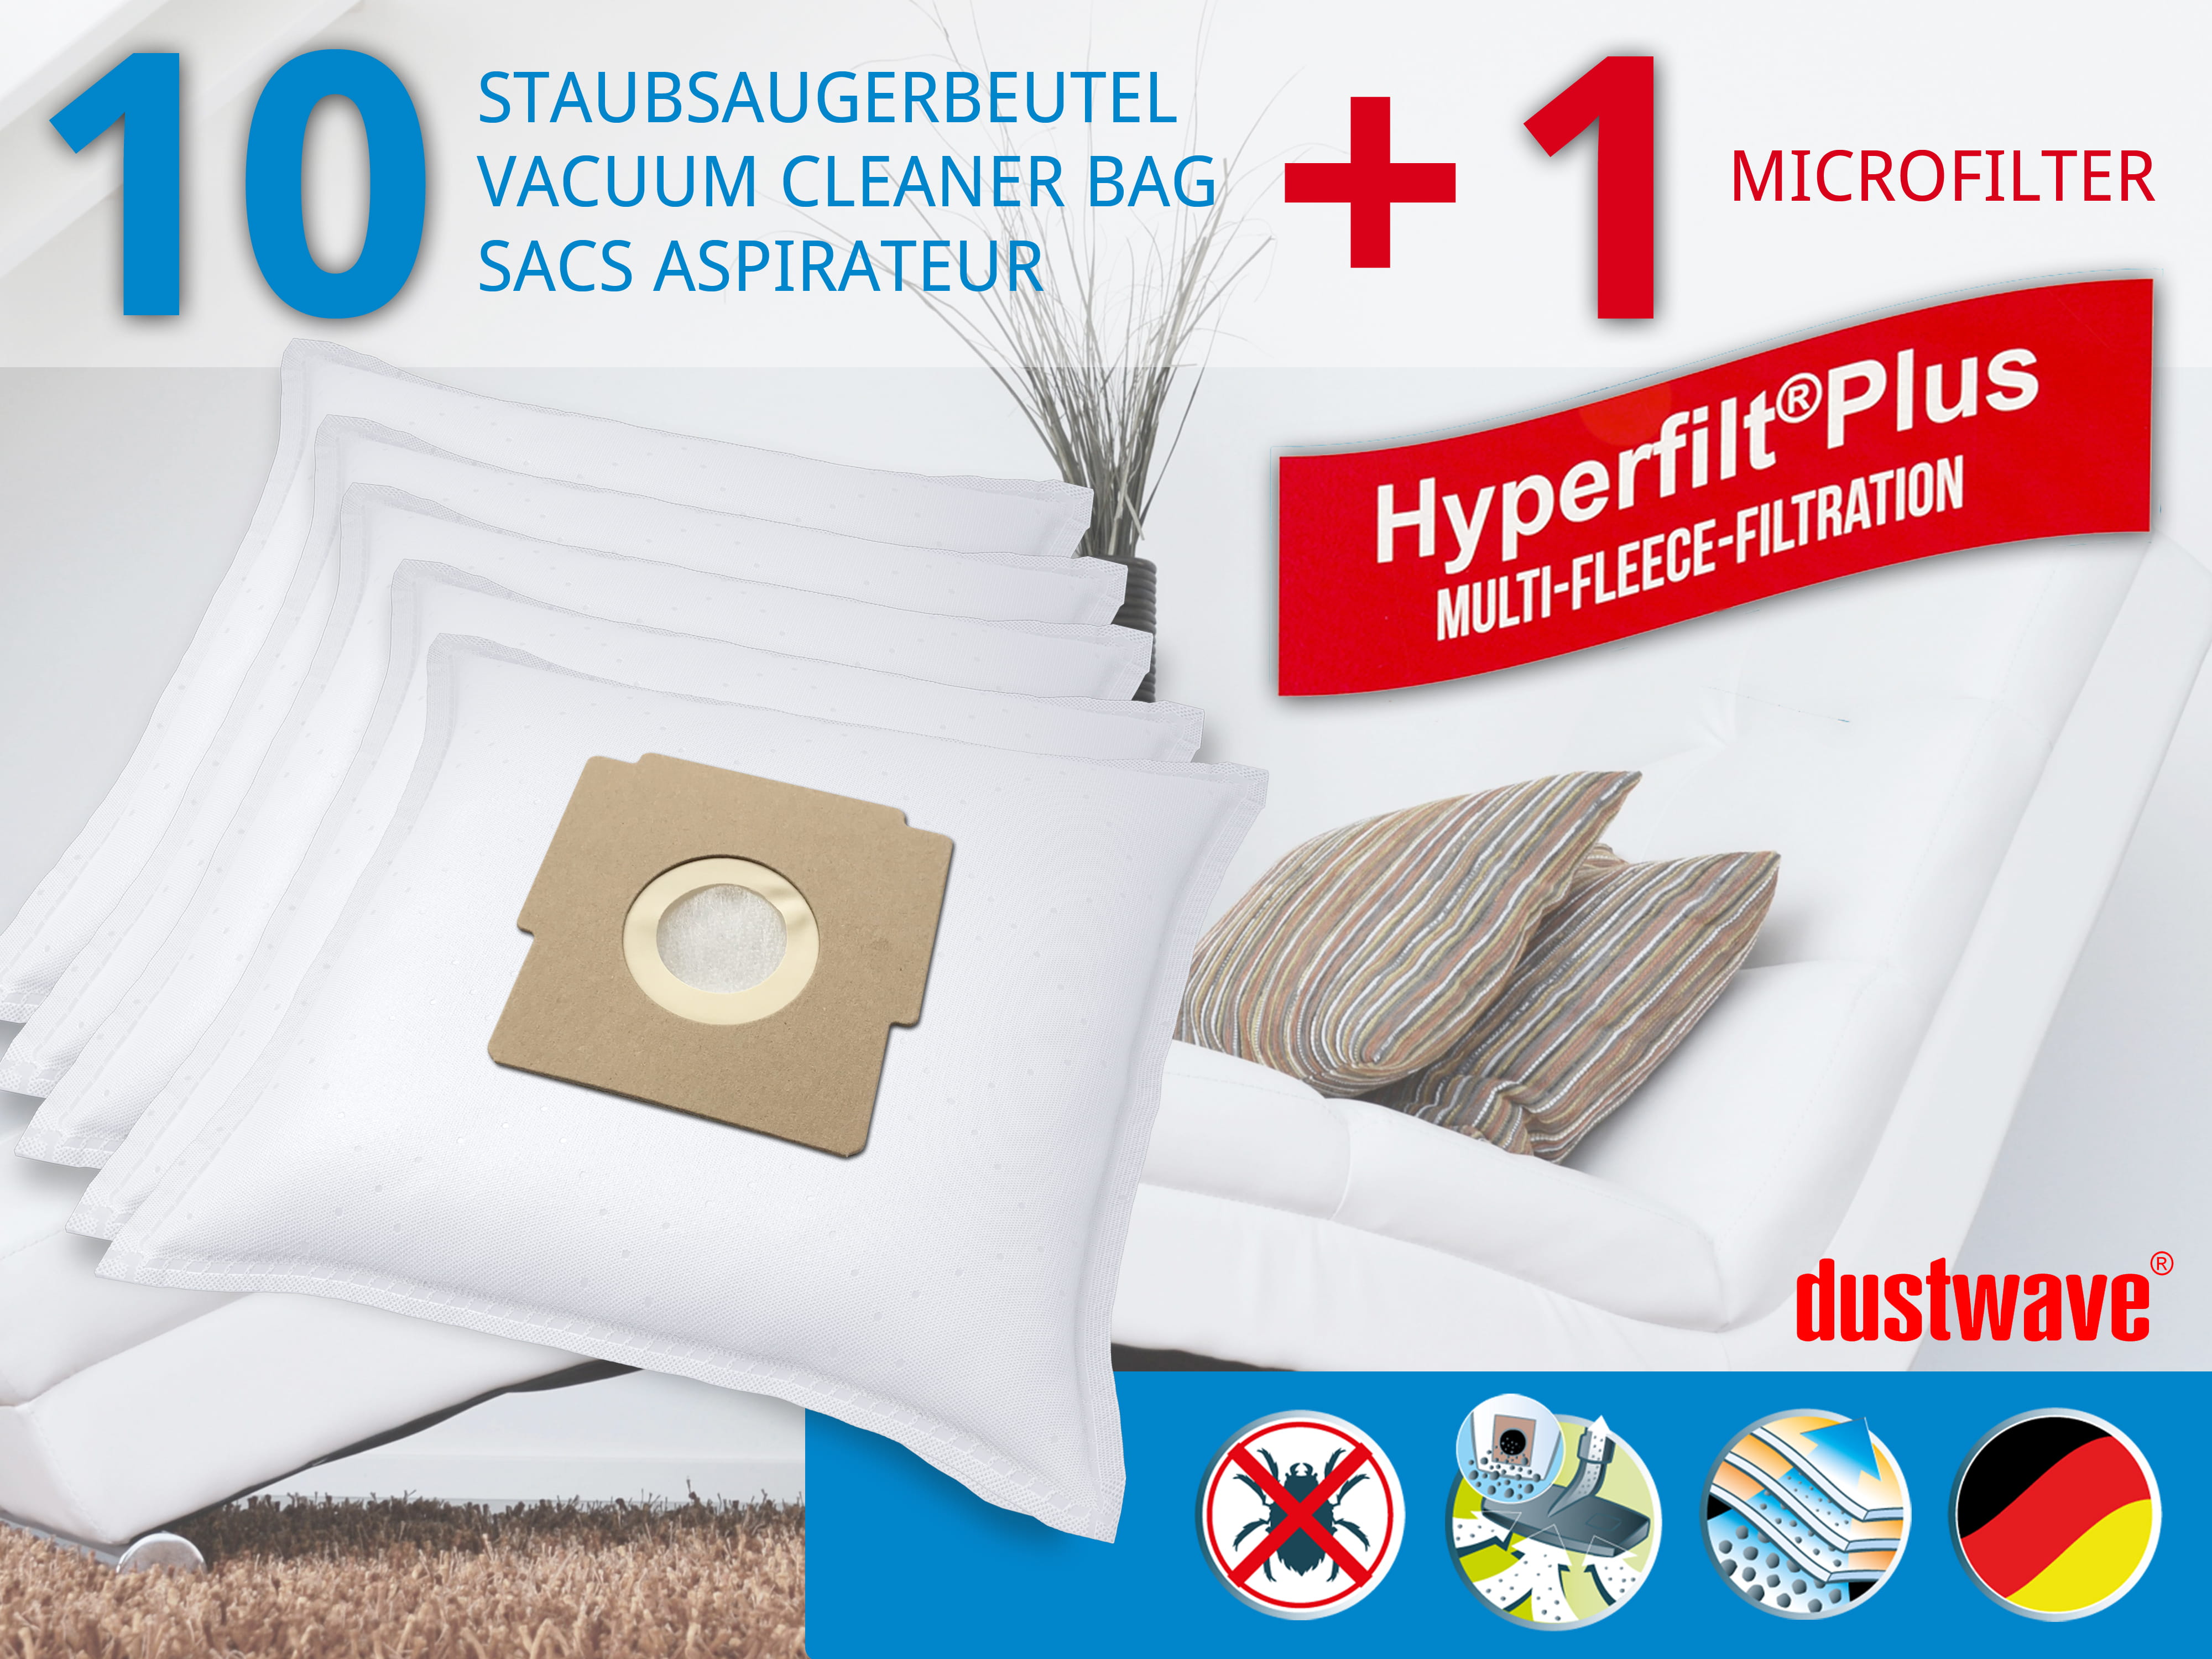 Dustwave® 10 Staubsaugerbeutel für Bestron KX 1700 E / KX1700E - hocheffizient, mehrlagiges Mikrovlies mit Hygieneverschluss - Made in Germany